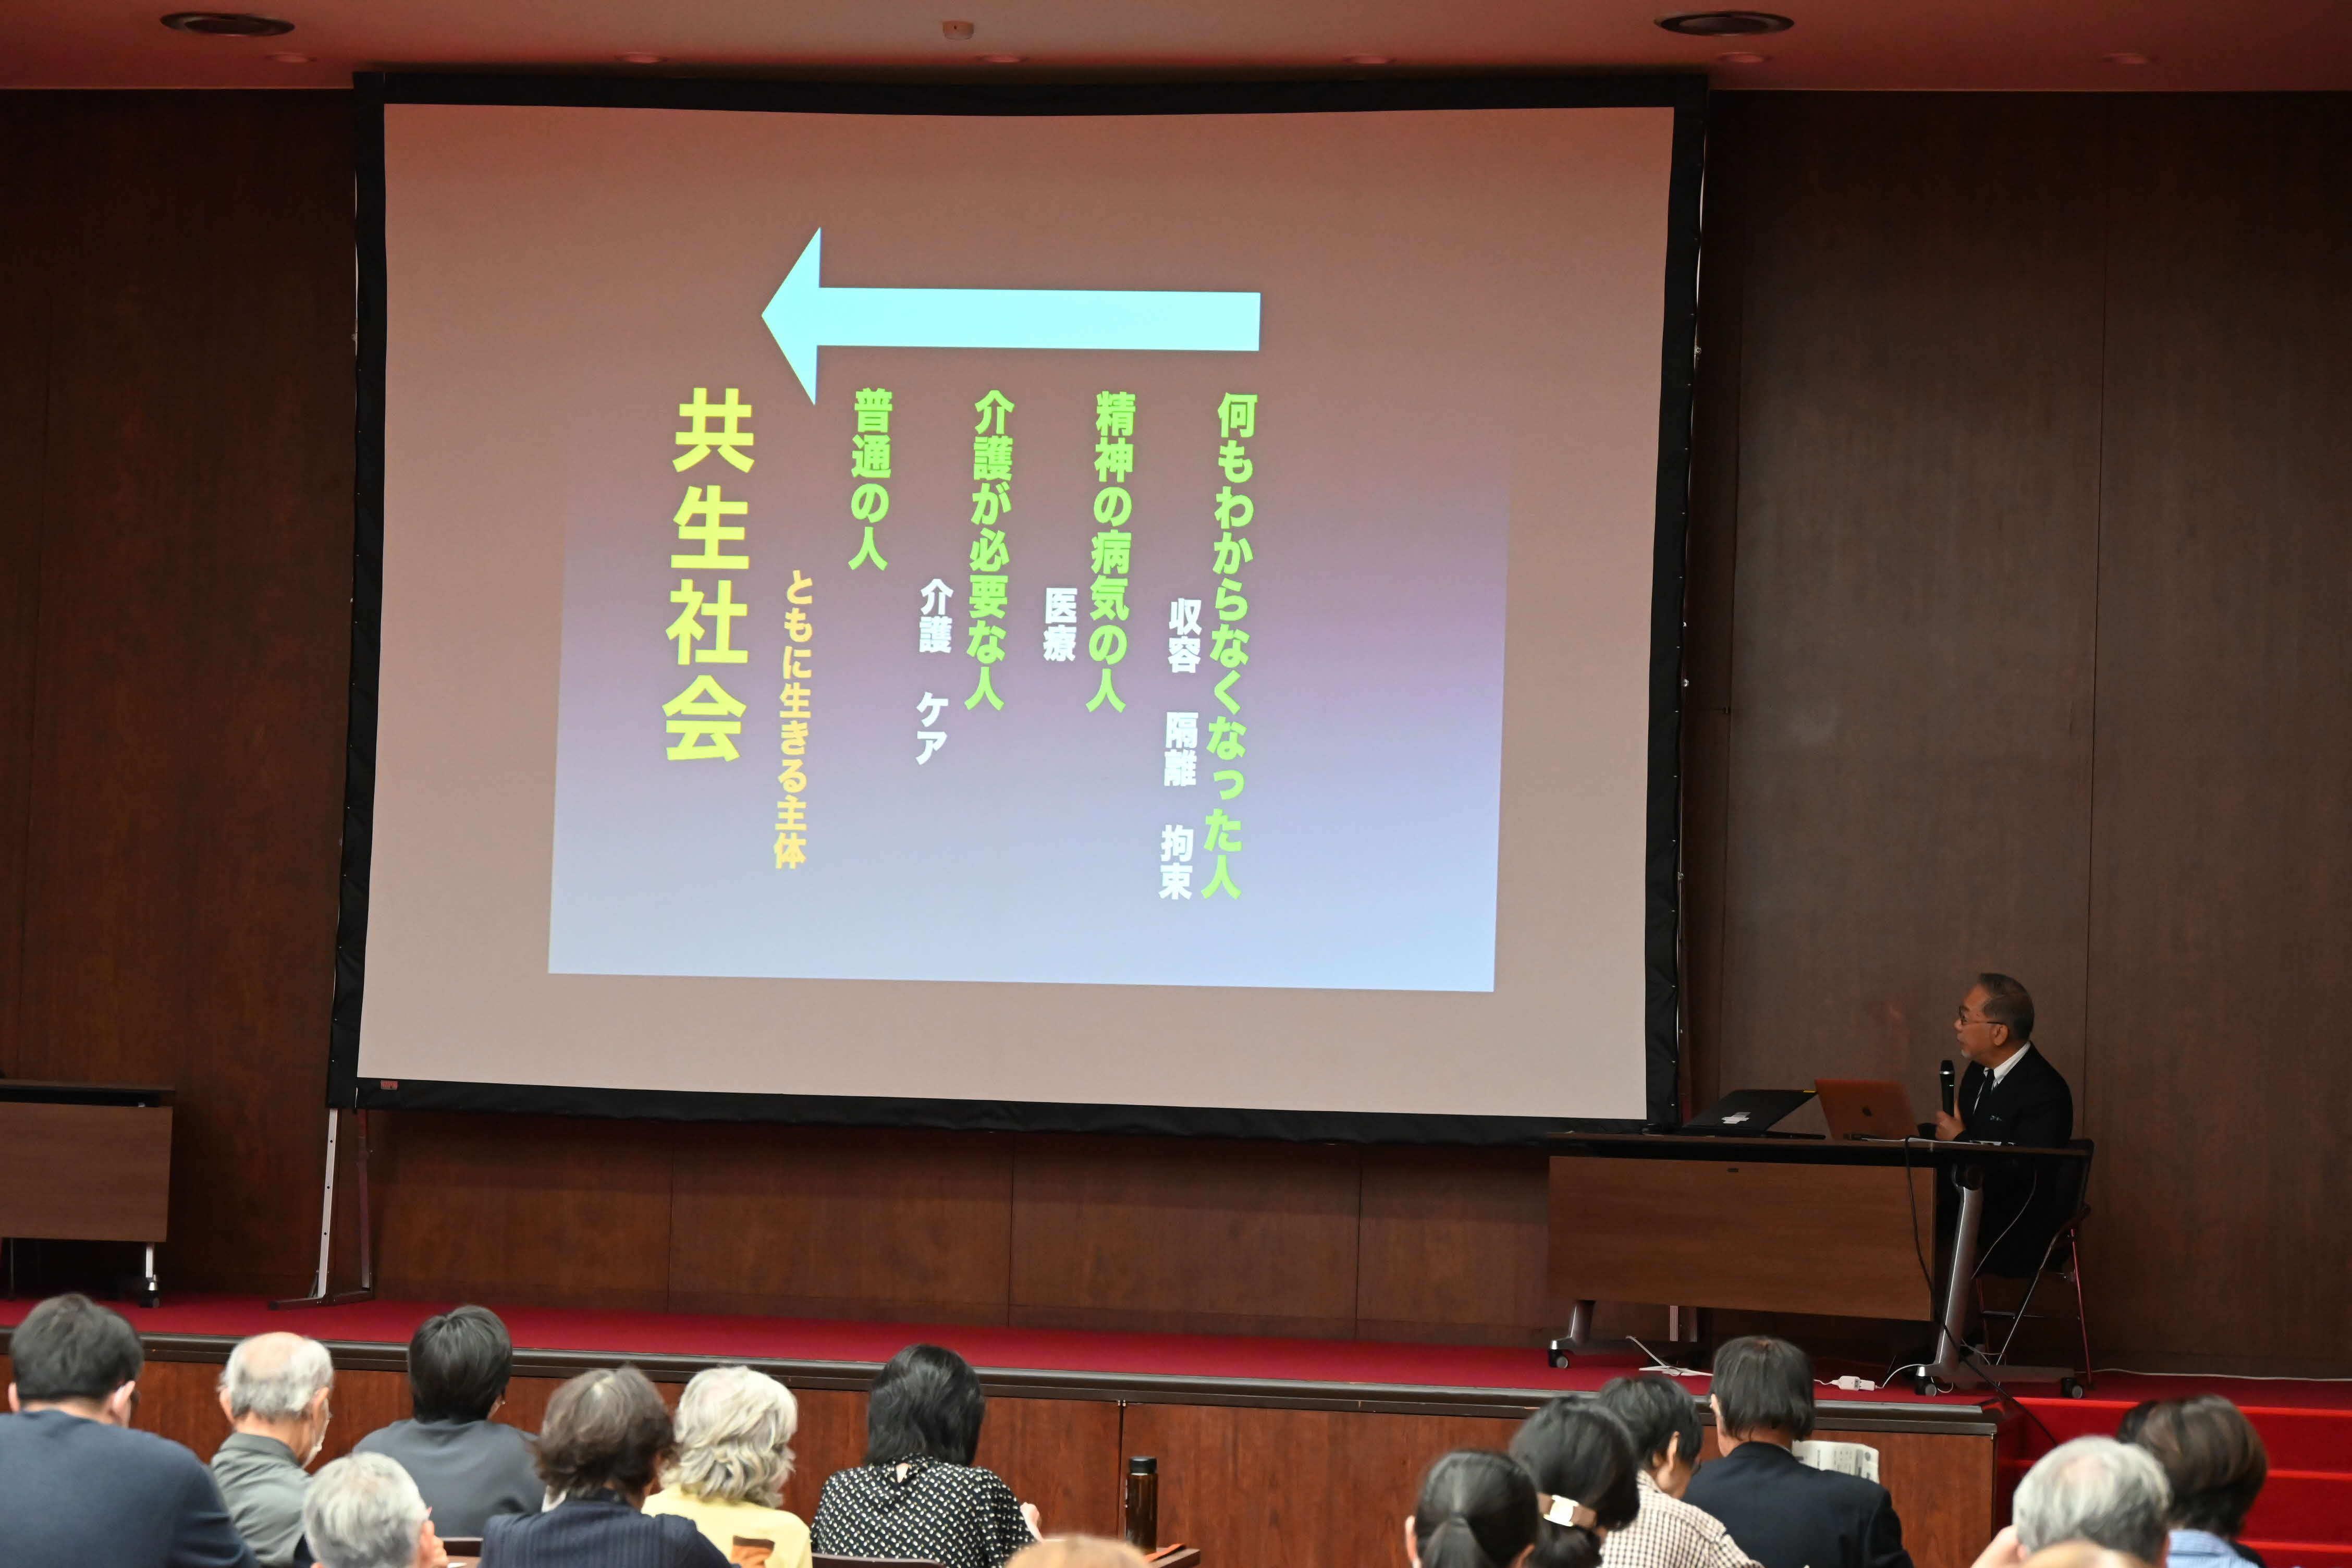 町永氏の講演のスクリーン画像の写真